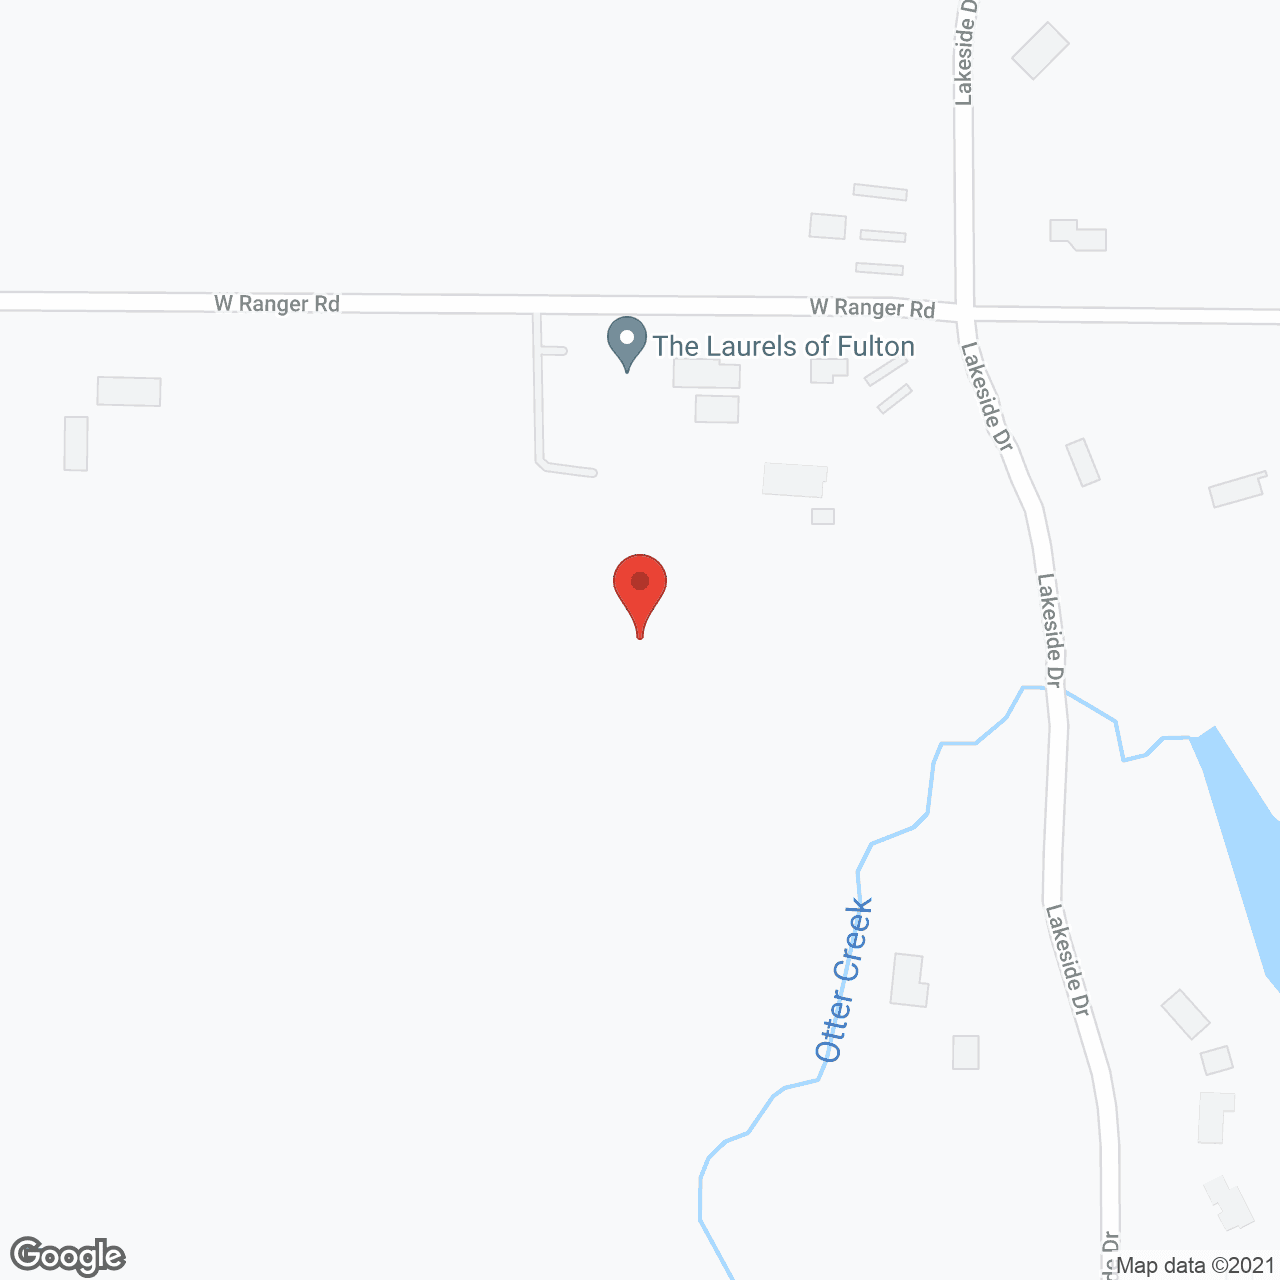 Laurels of Fulton in google map